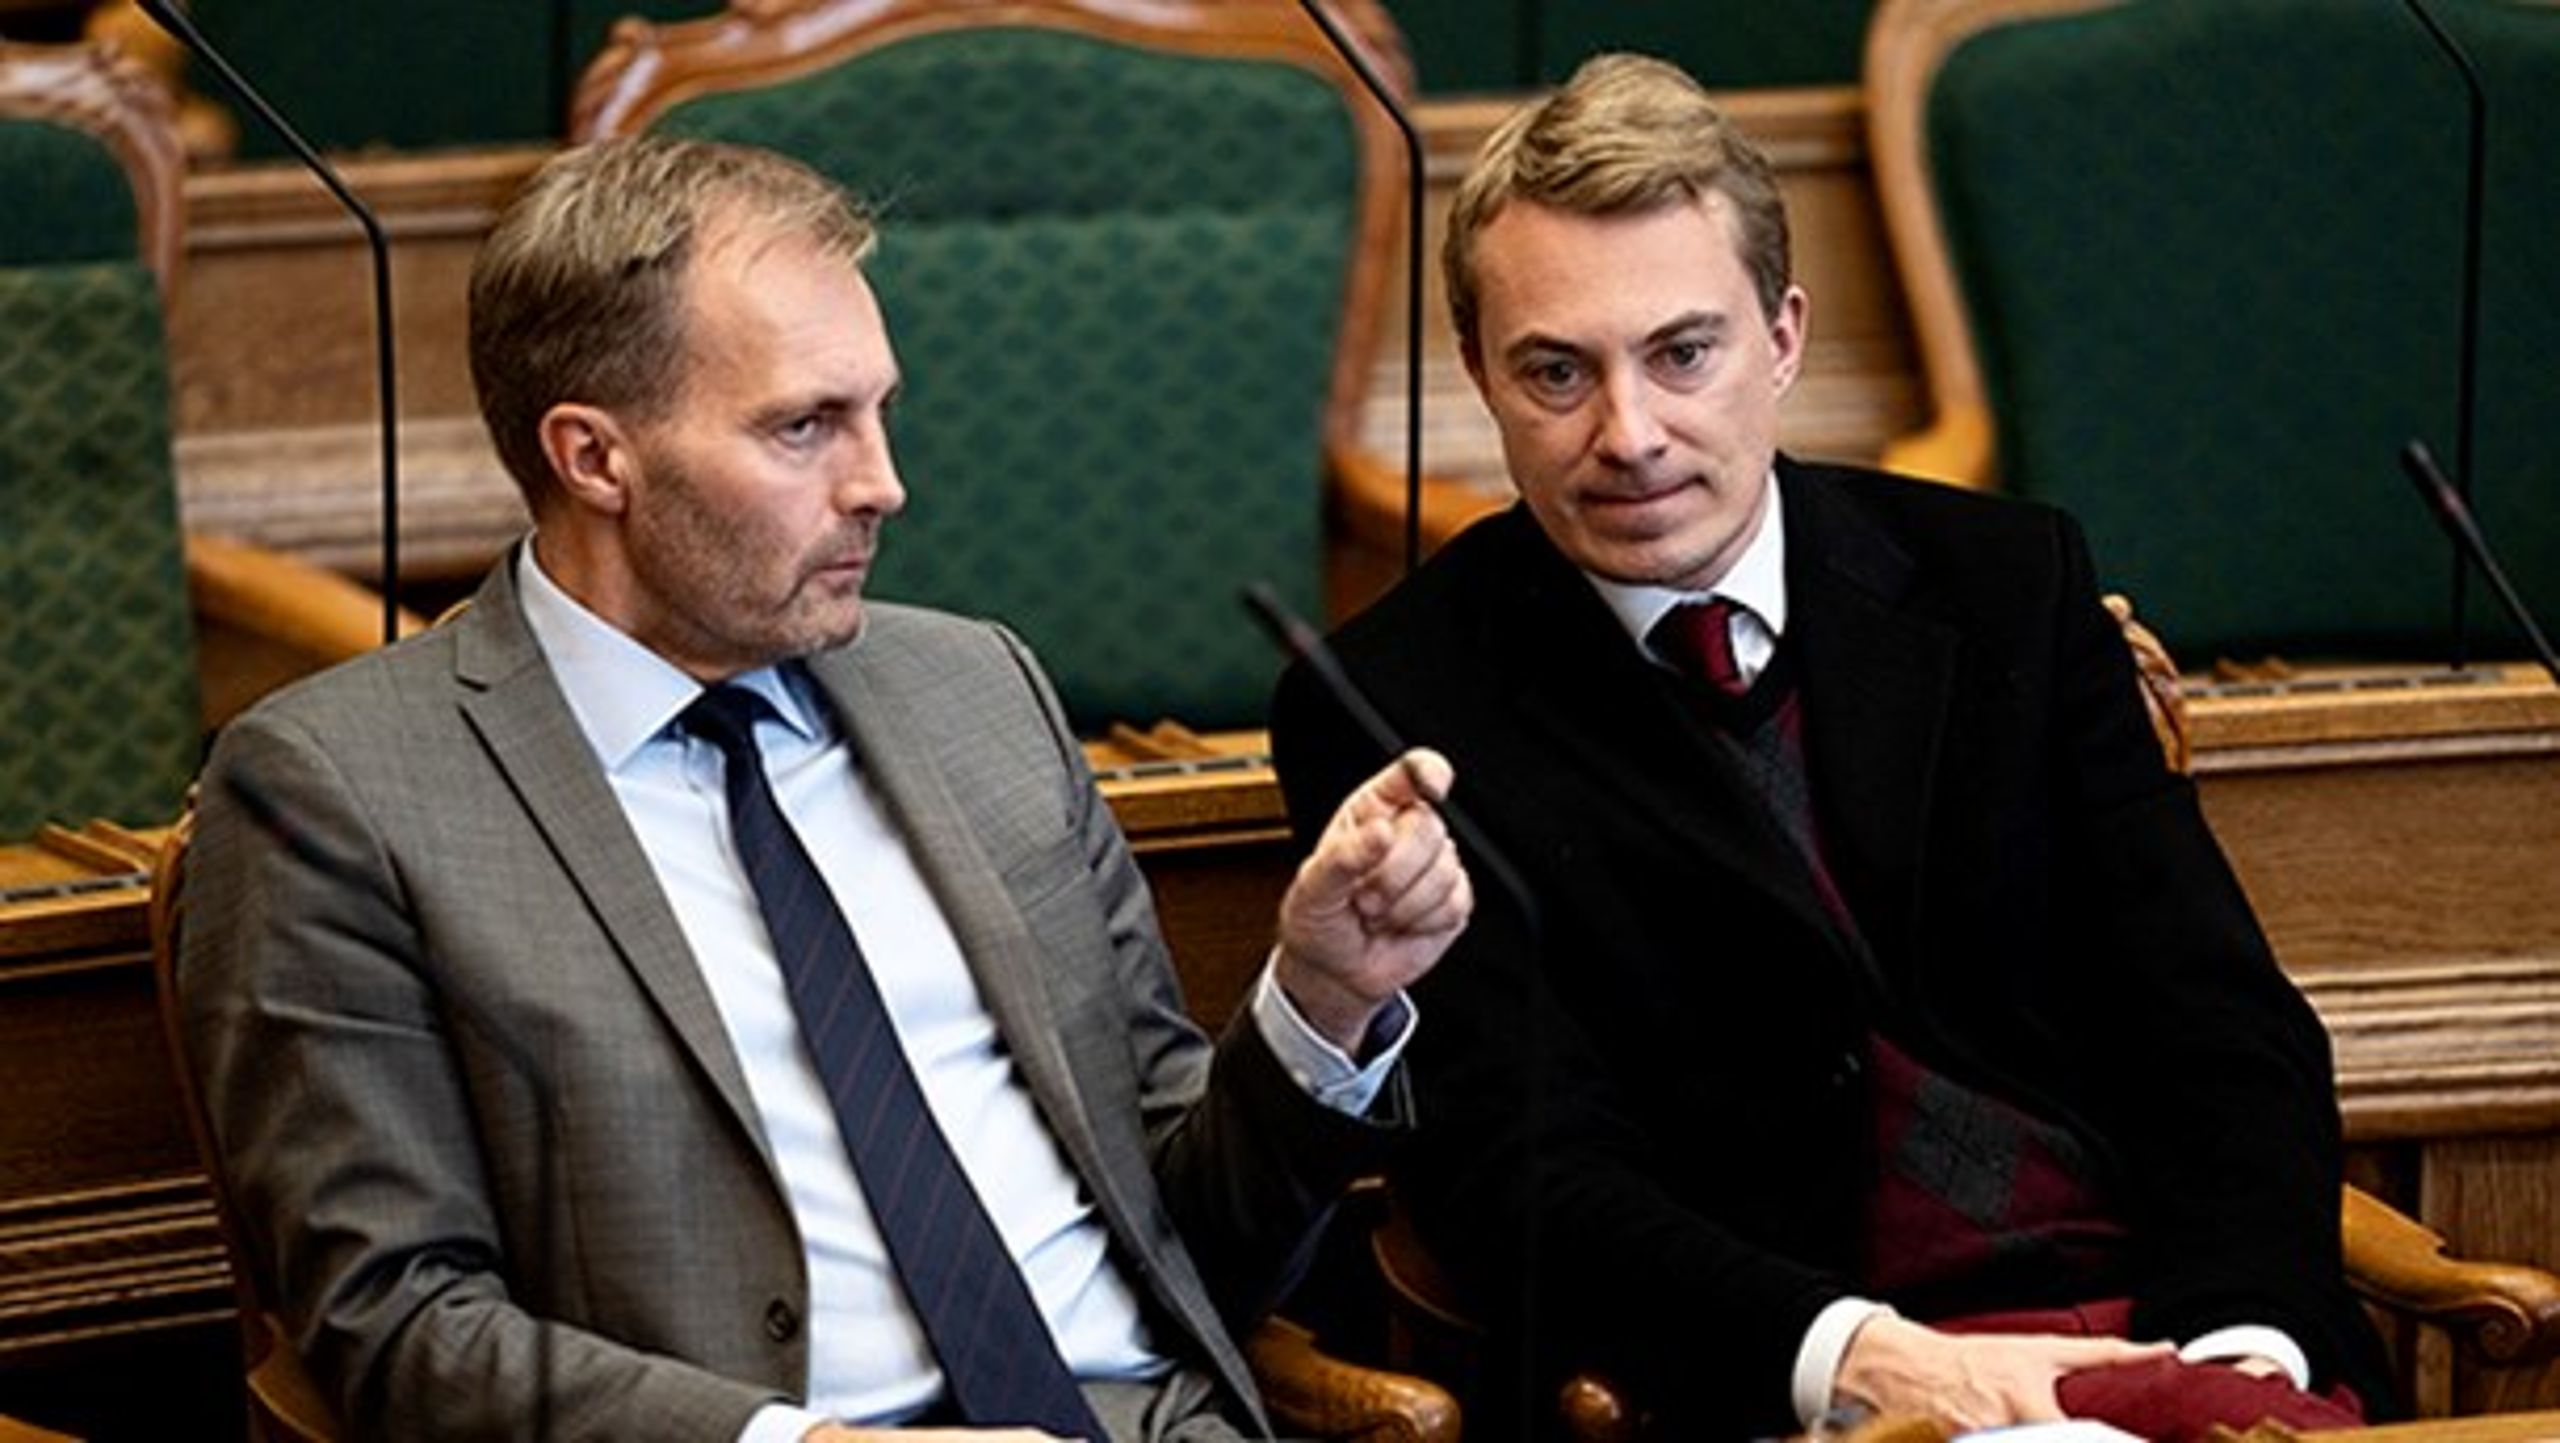 Blandt andet Dansk Folkpartis Morten Messerschmidt er blevet misbrugt i falske facebookopslag, hvor man efterlades med opfattelsen af, at politikeren undsiger dronningen.